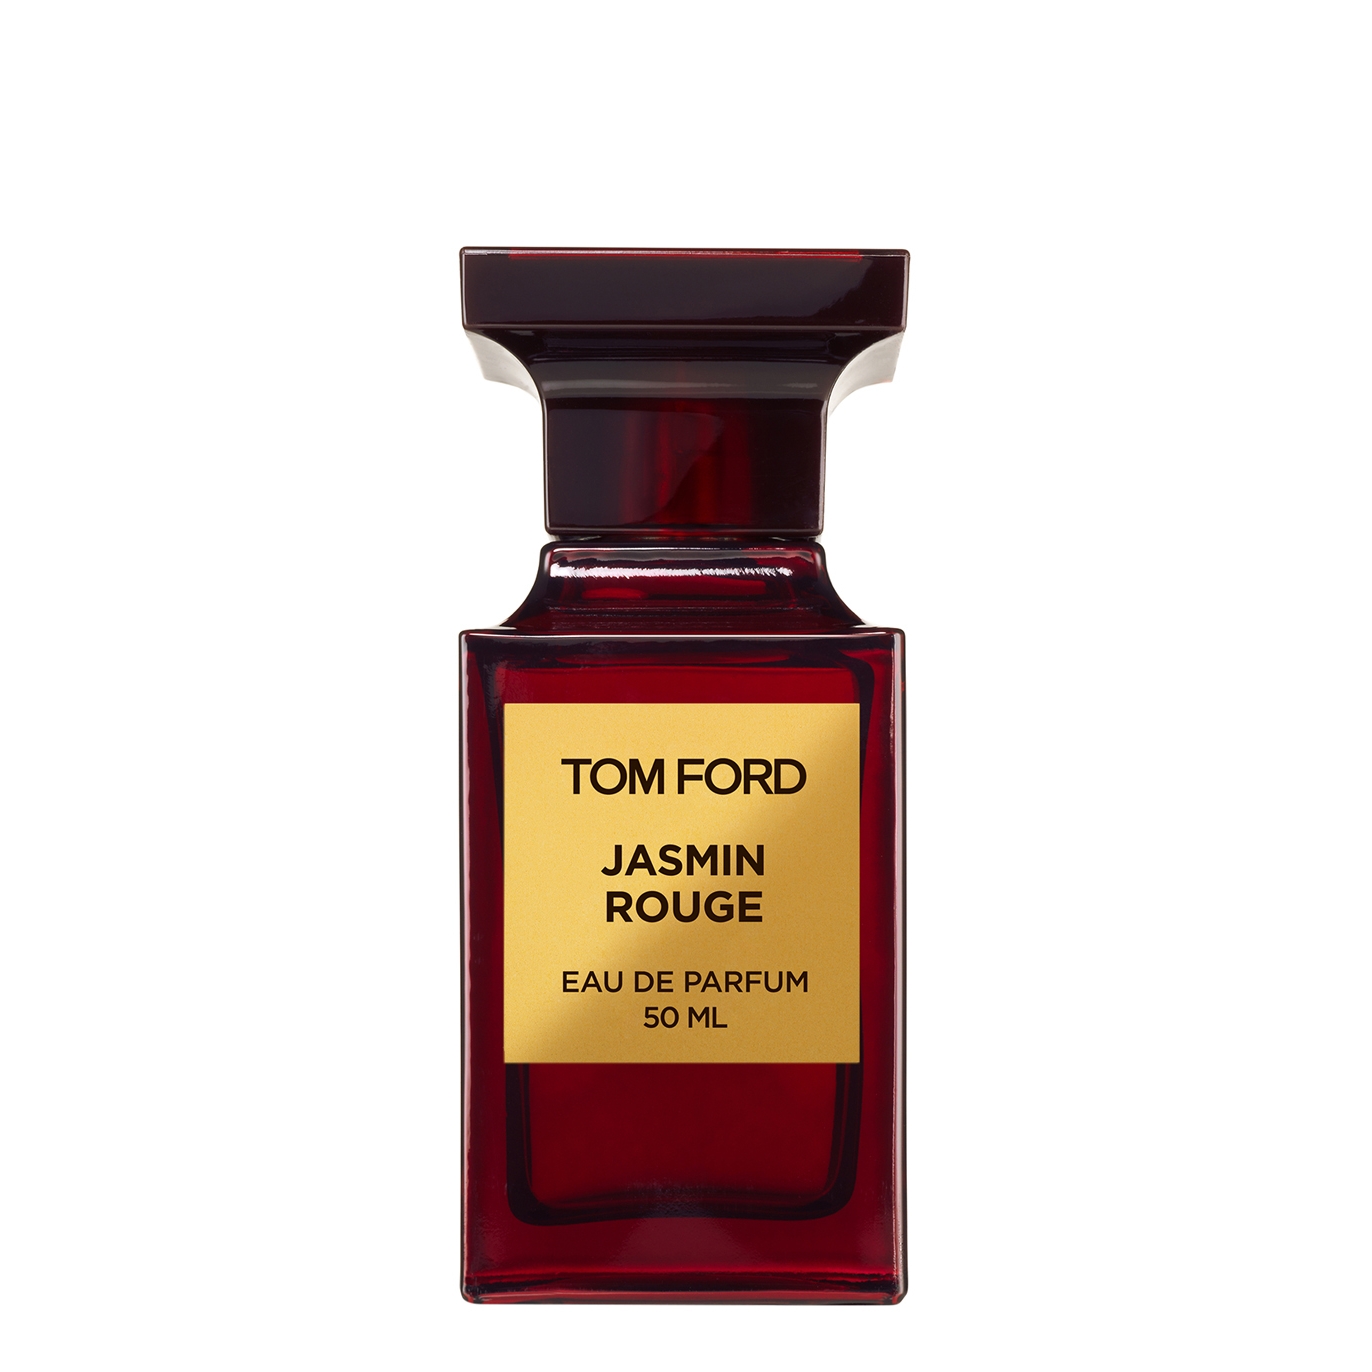 Tom Ford Jasmin Rouge Eau De Parfum 50ml - Harvey Nichols